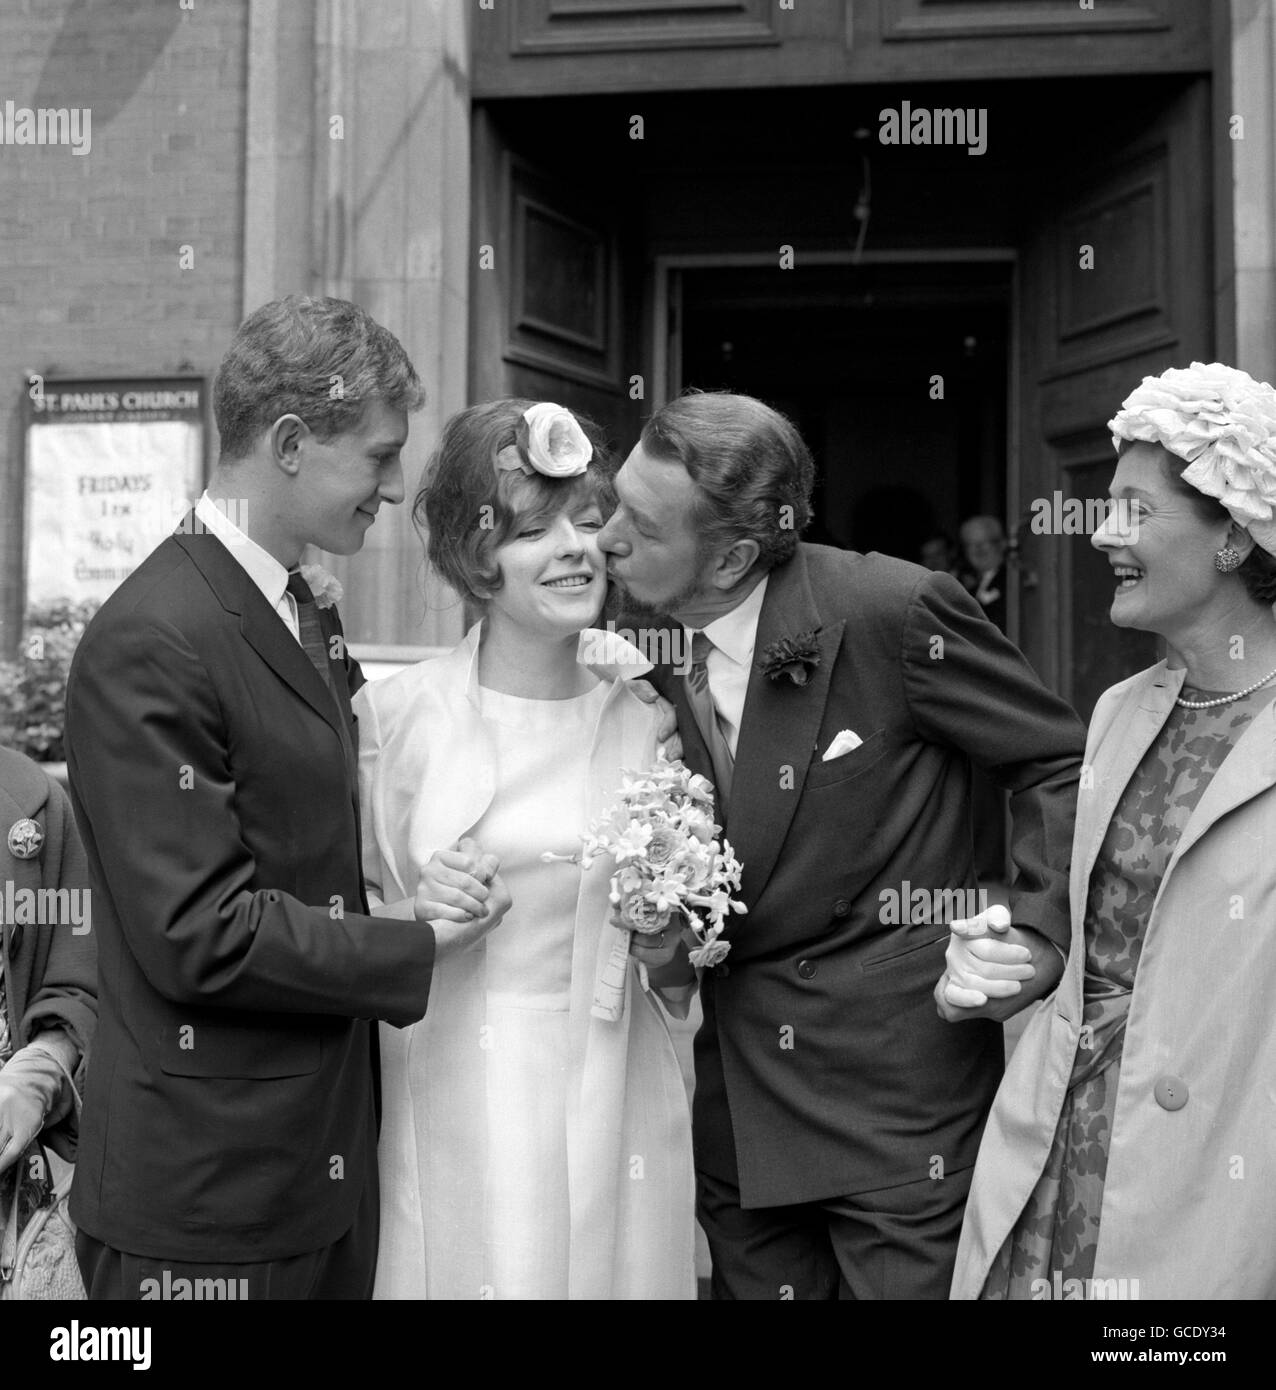 L'attore Sir Michael Redgrave dà un bacio di giorno di nozze a sua nuova figlia in legge, Deidre Hamilton-Hill di 23 anni, dopo il suo matrimonio con il figlio dell'attore di Sir Michael, Corin Redgrave, a sinistra, alla chiesa di St Paul, Covent Garden, Londra. Foto Stock